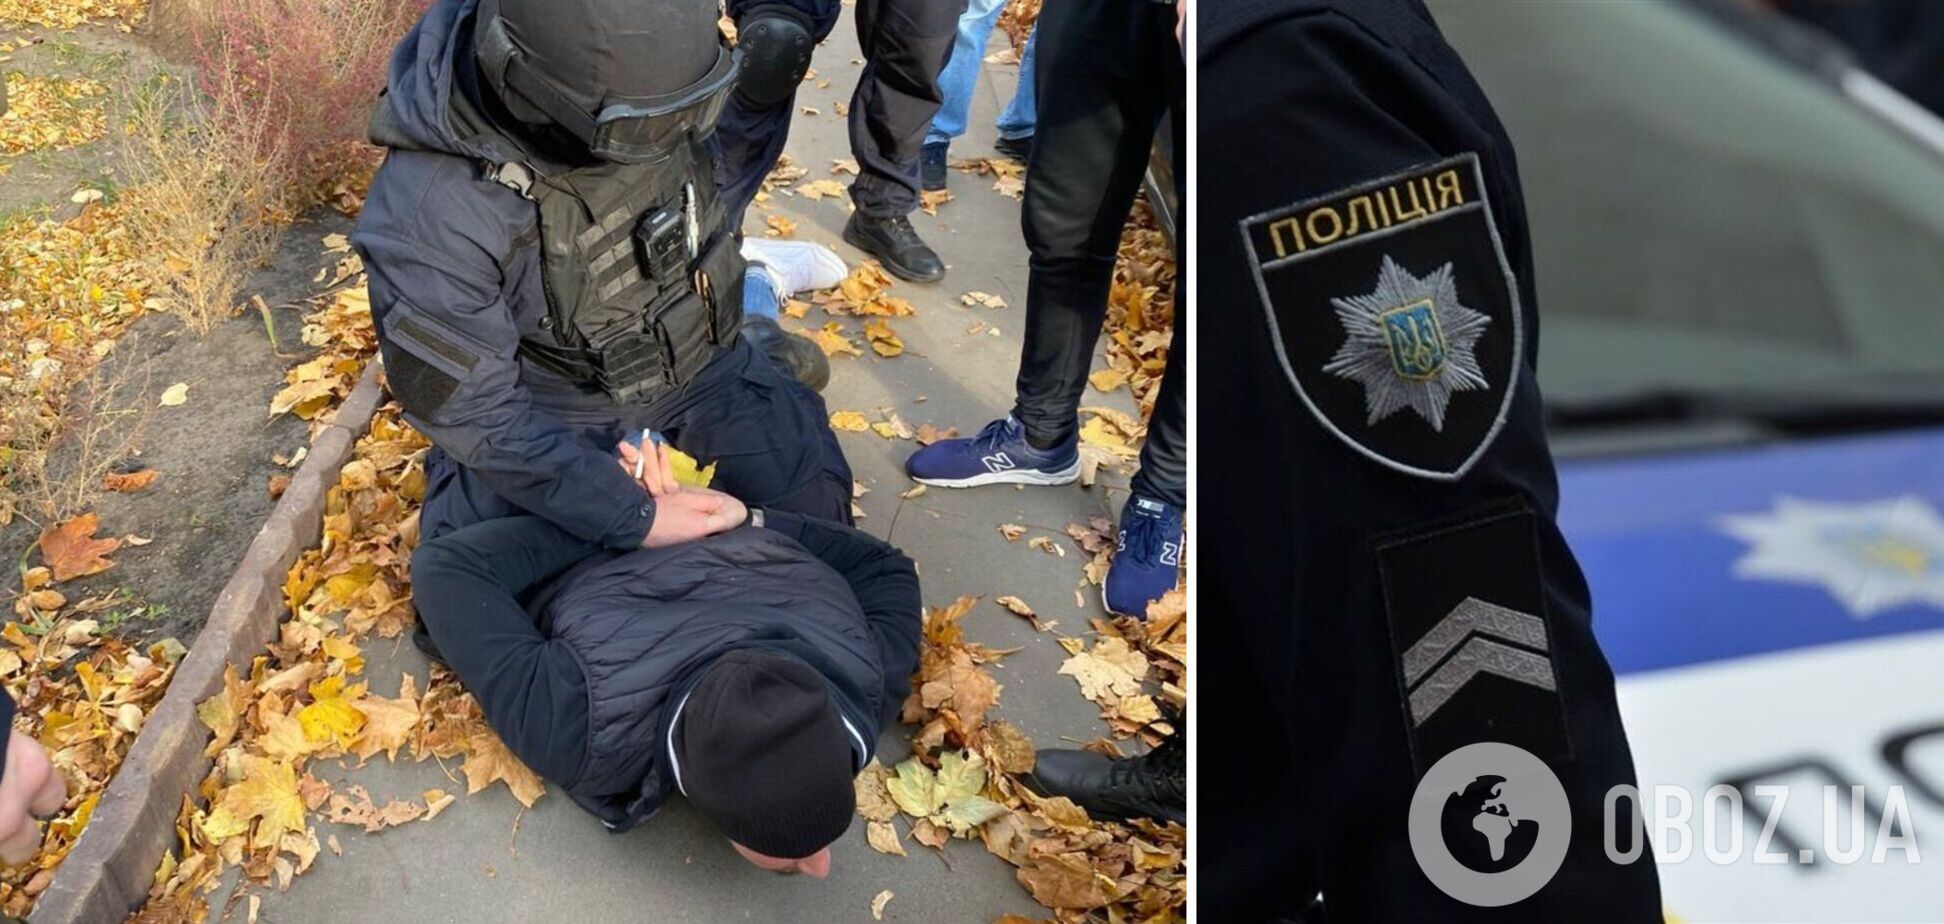 7 лет скрывался от правосудия: в Харькове задержали убийцу таксиста, сбежавшего после приговора. Фото и видео